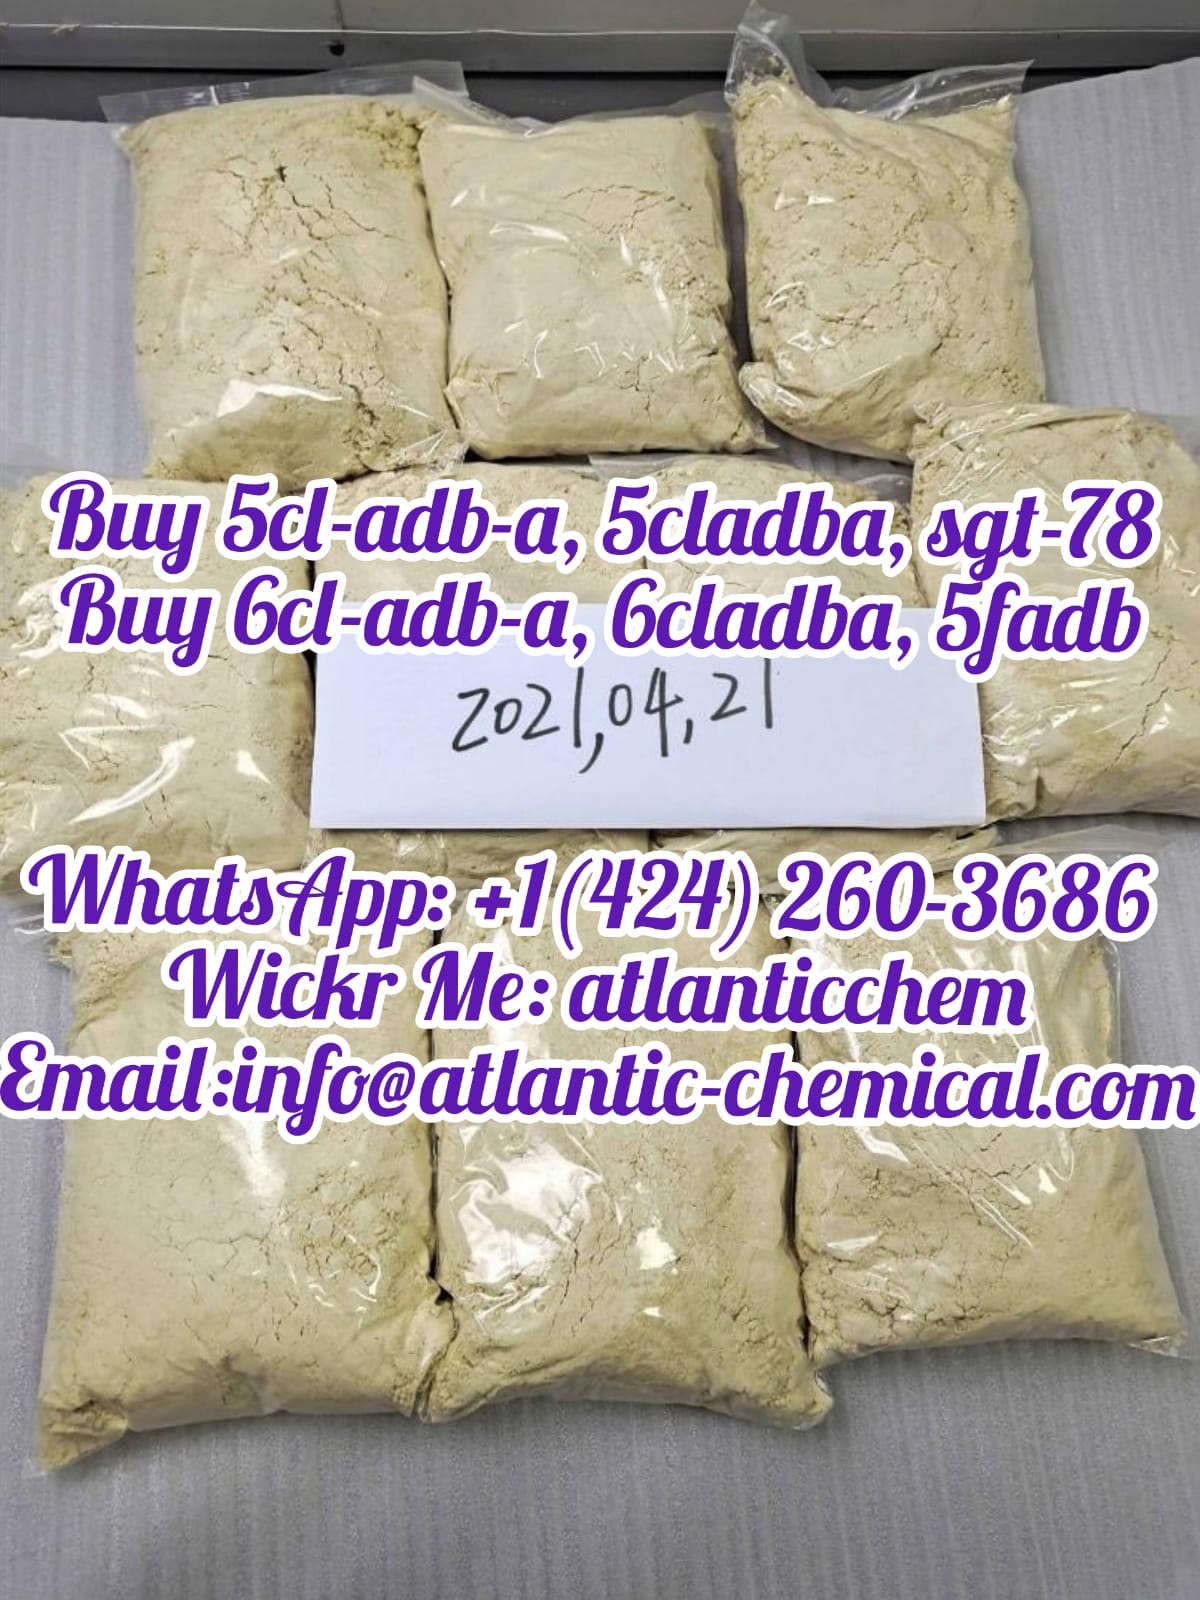 Buy 5cladba online, 5cladba for sale,  Buy 6cladba online, 6cladba for sale,  Buy adb-butinaca, - photo